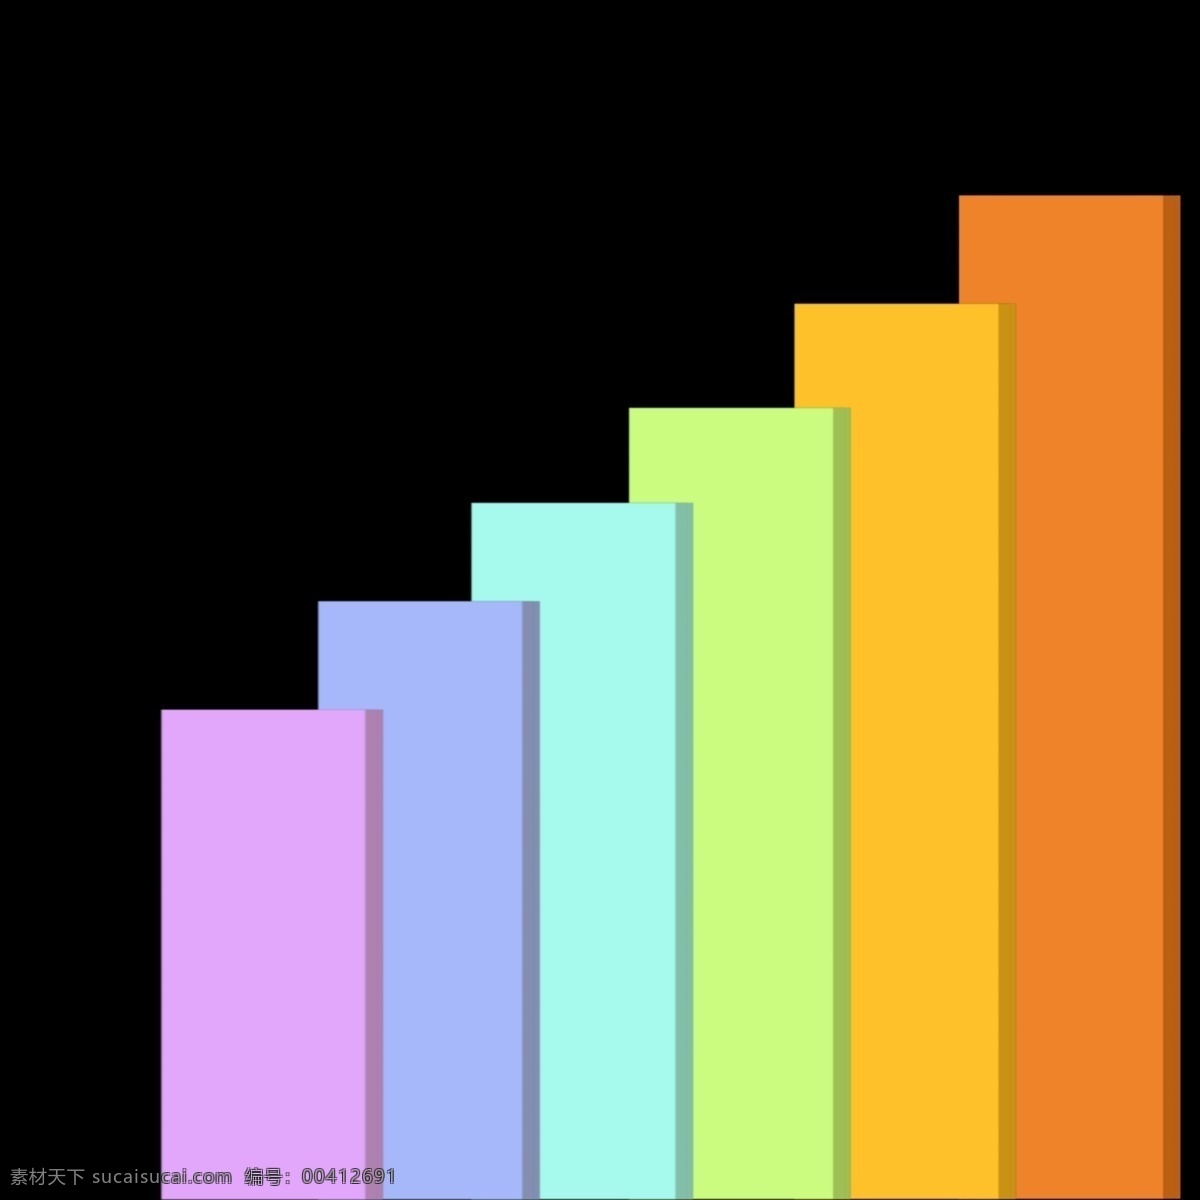 统计 图表 免 抠 图 ppt图表 彩色统计图 扁平化 数据分析 趋势图 销售额 汇总 分析 统计图表